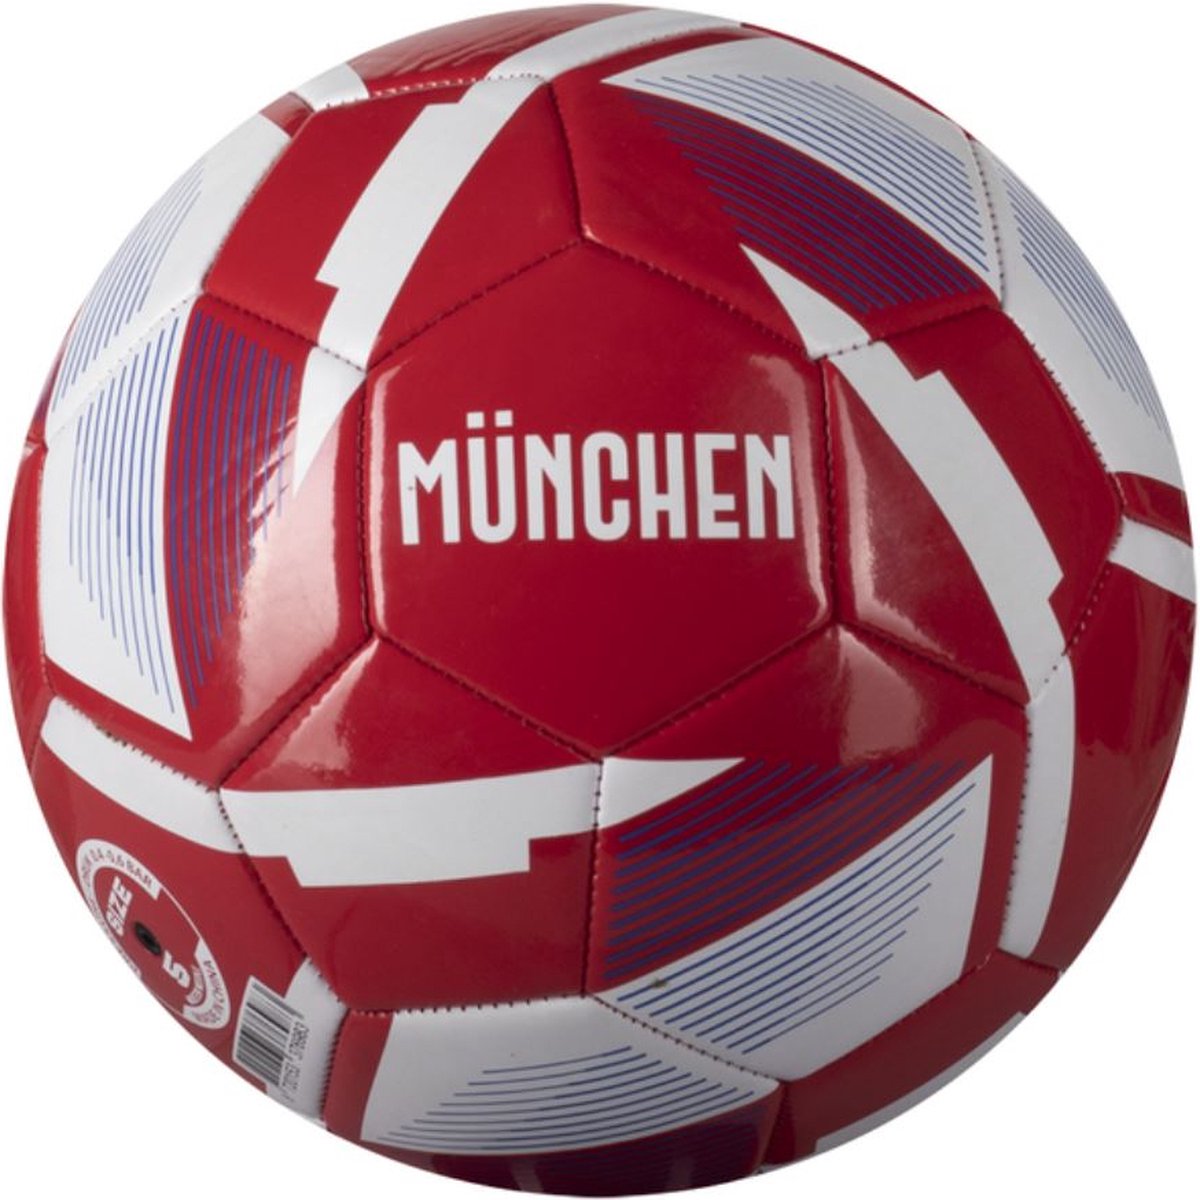 Munchen Voetbal Rood Maat 5 - bundesliga -